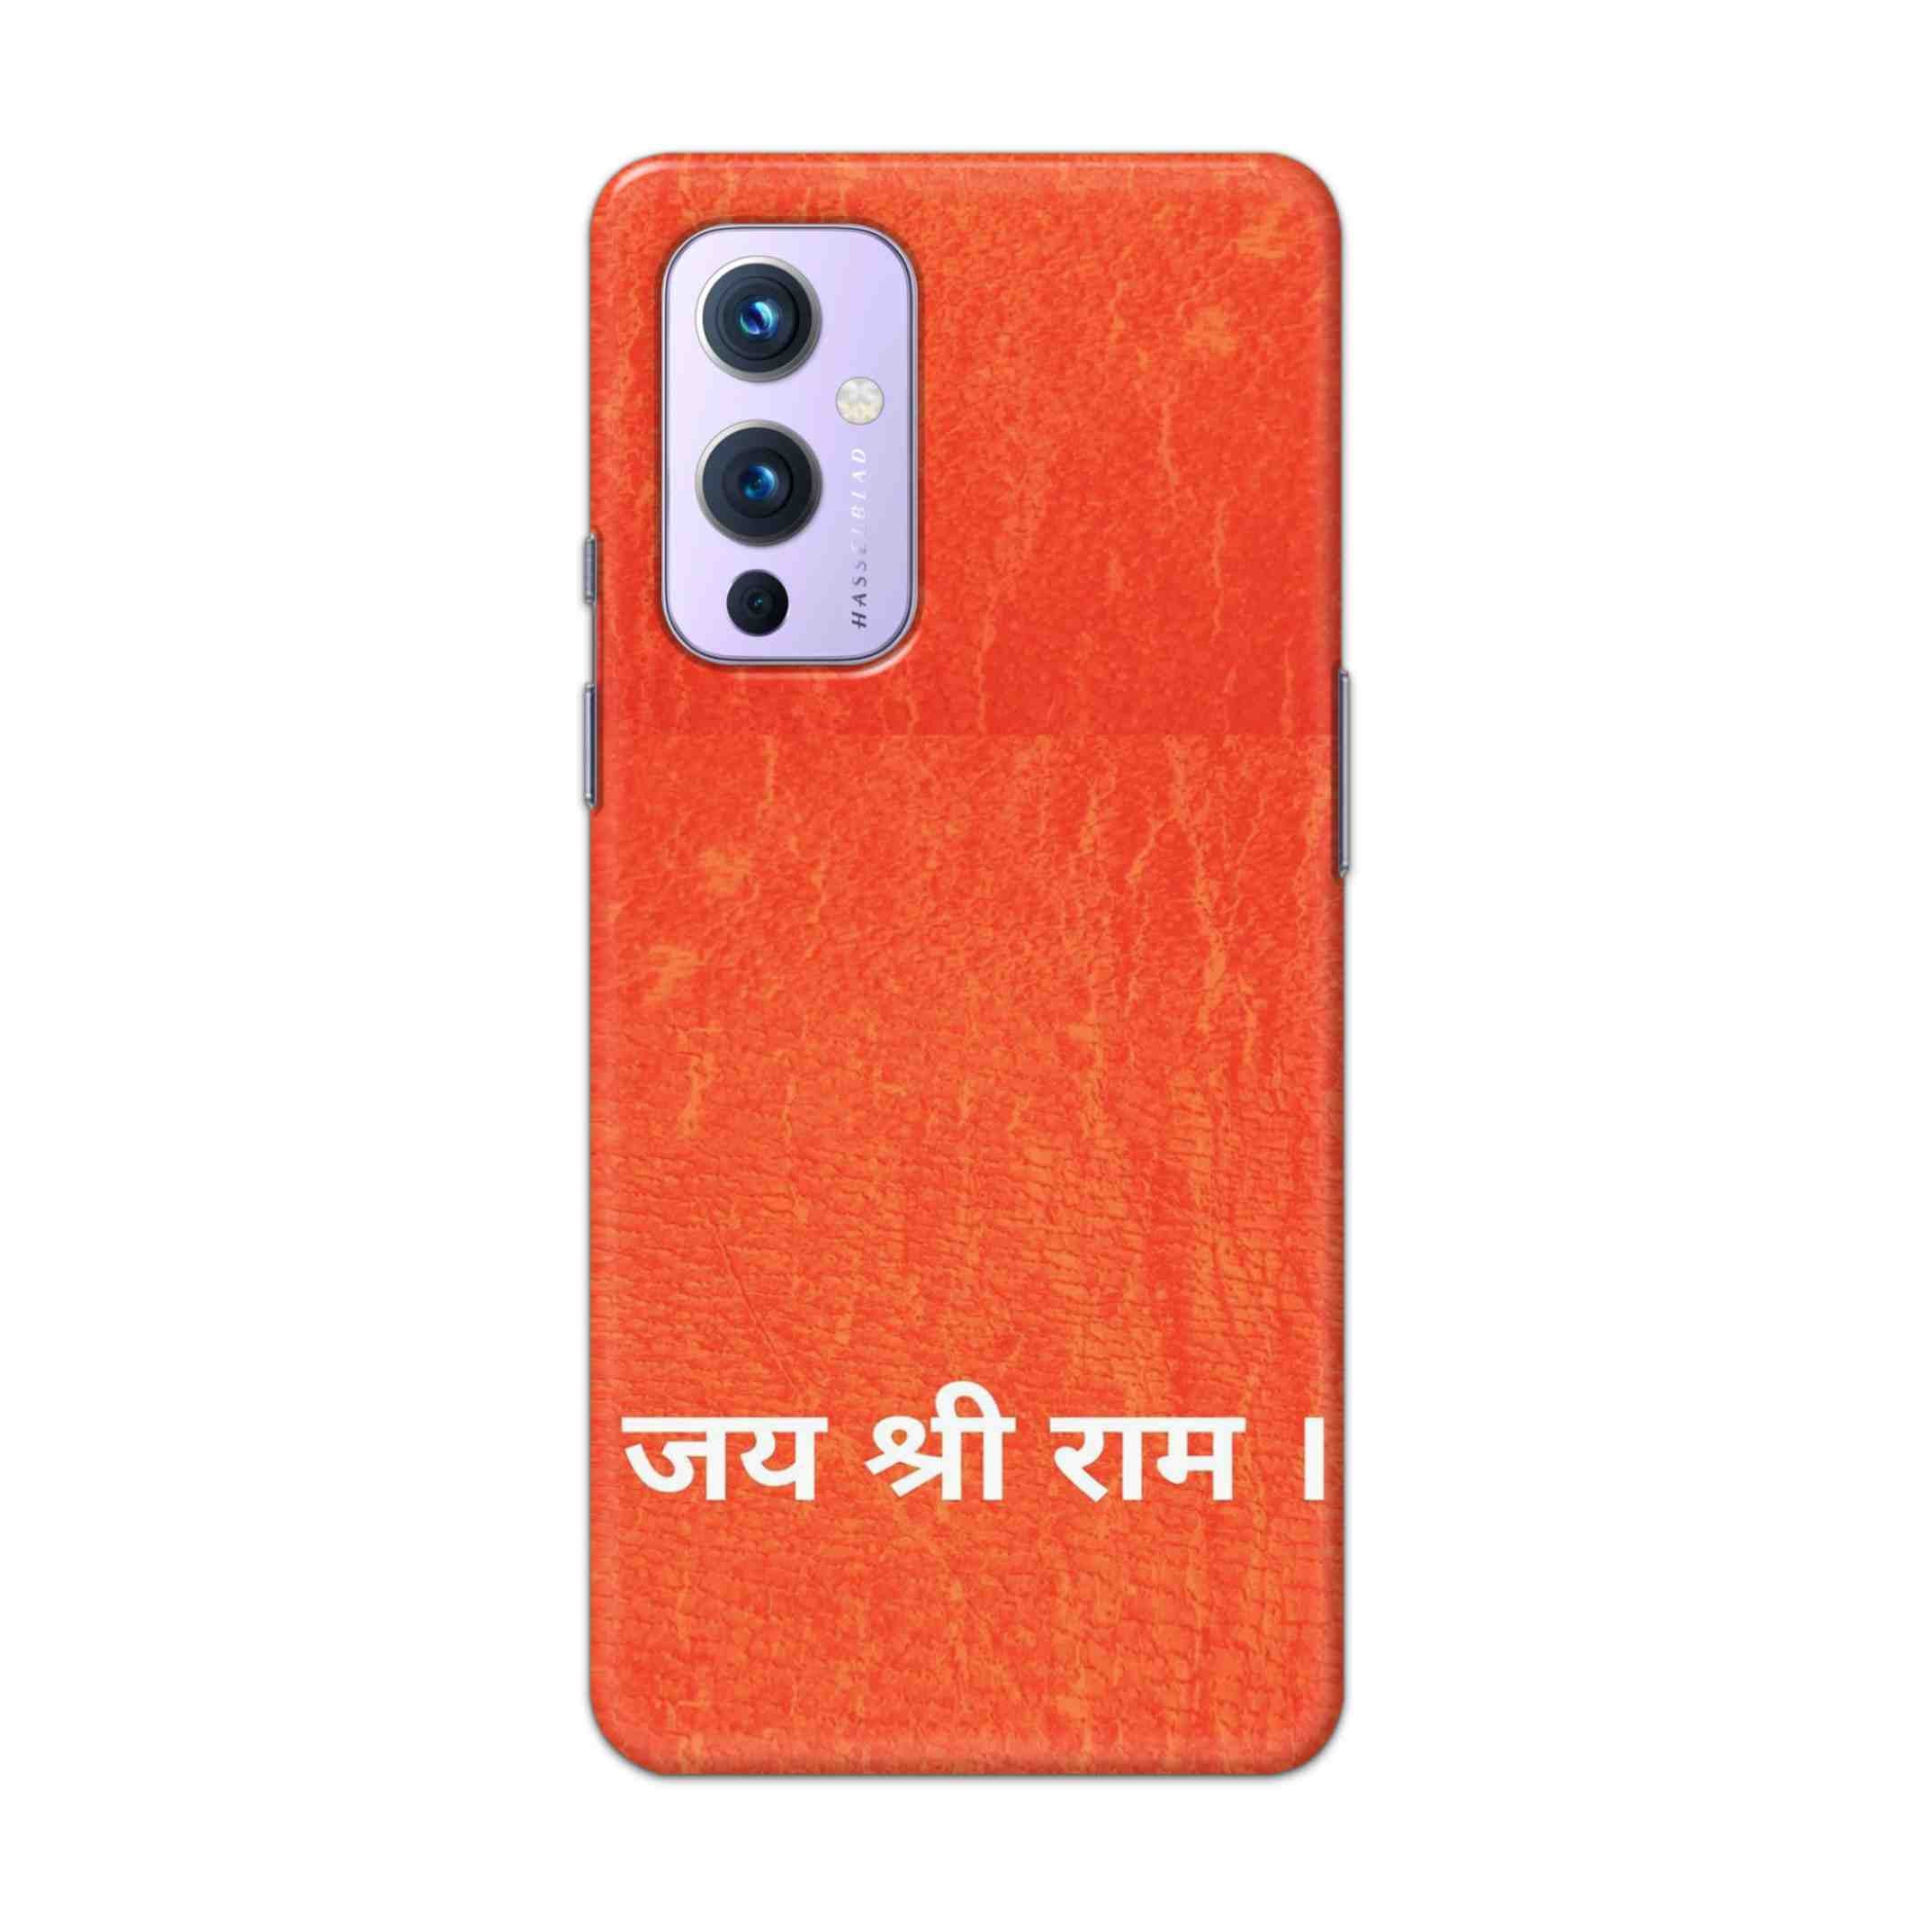 Buy Jai Shree Ram Hard Back Mobile Phone Case Cover For OnePlus 9 Online